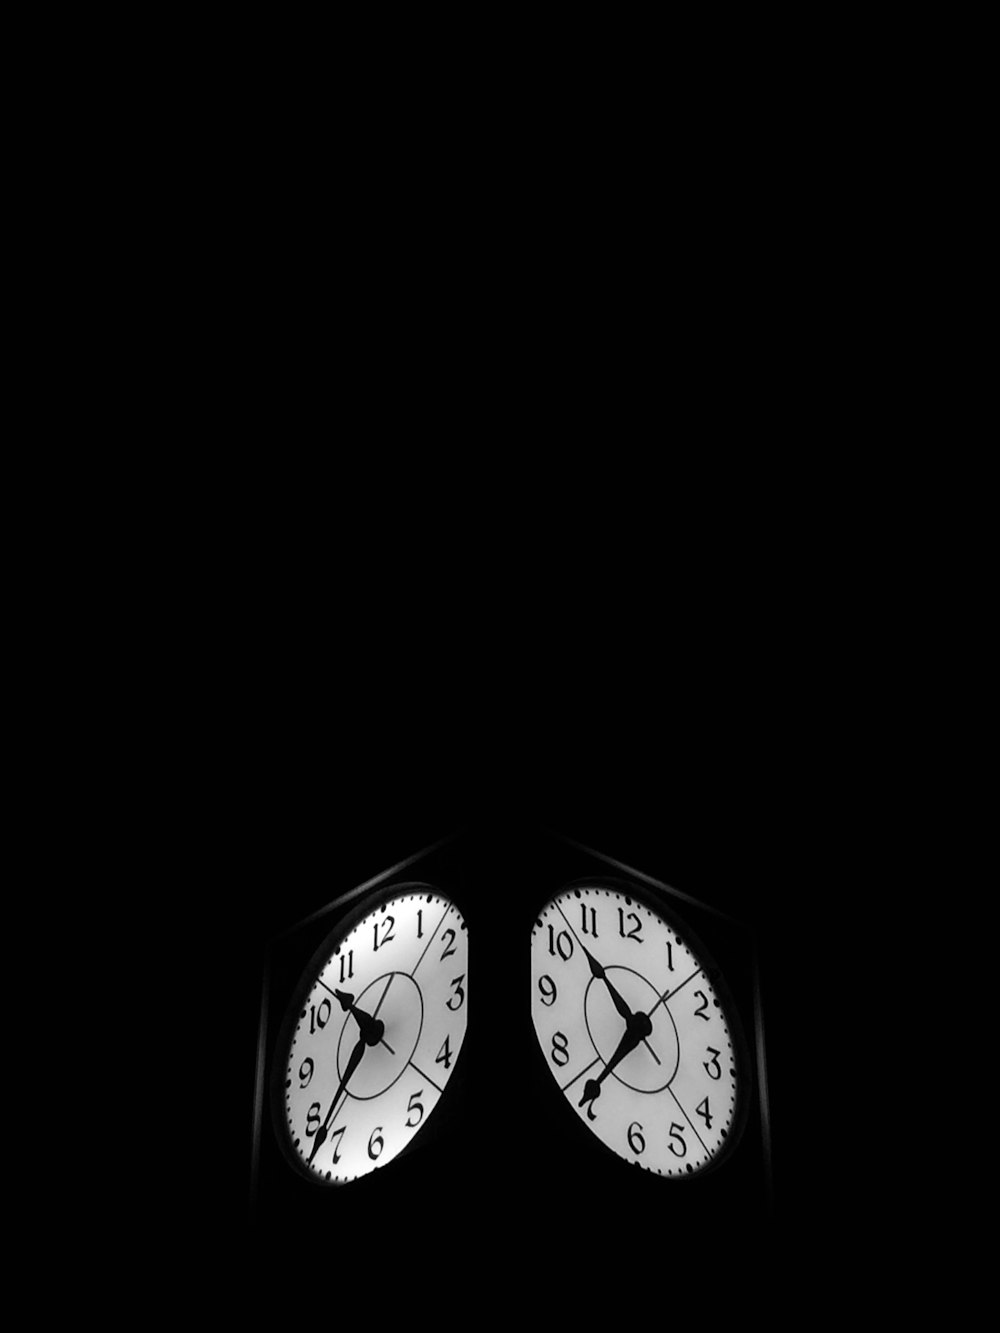 Horloge noire affichant 7 :52